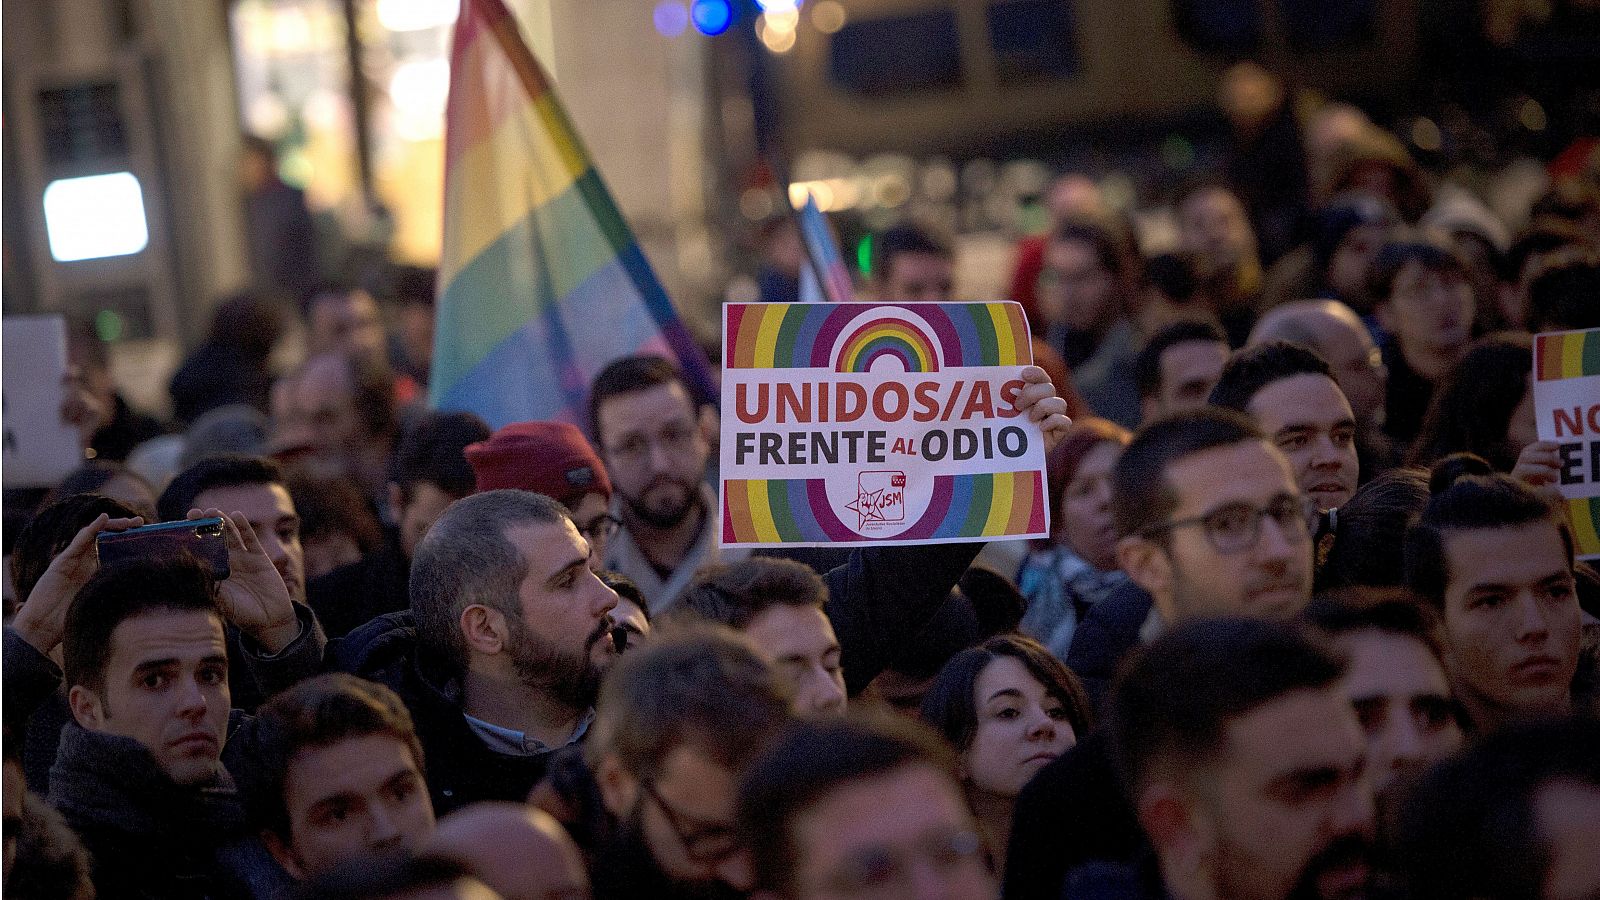 Profesores, padres y el colectivo LGTBI se manifiestan contra el 'pin parental' en Madrid- RTVE.es